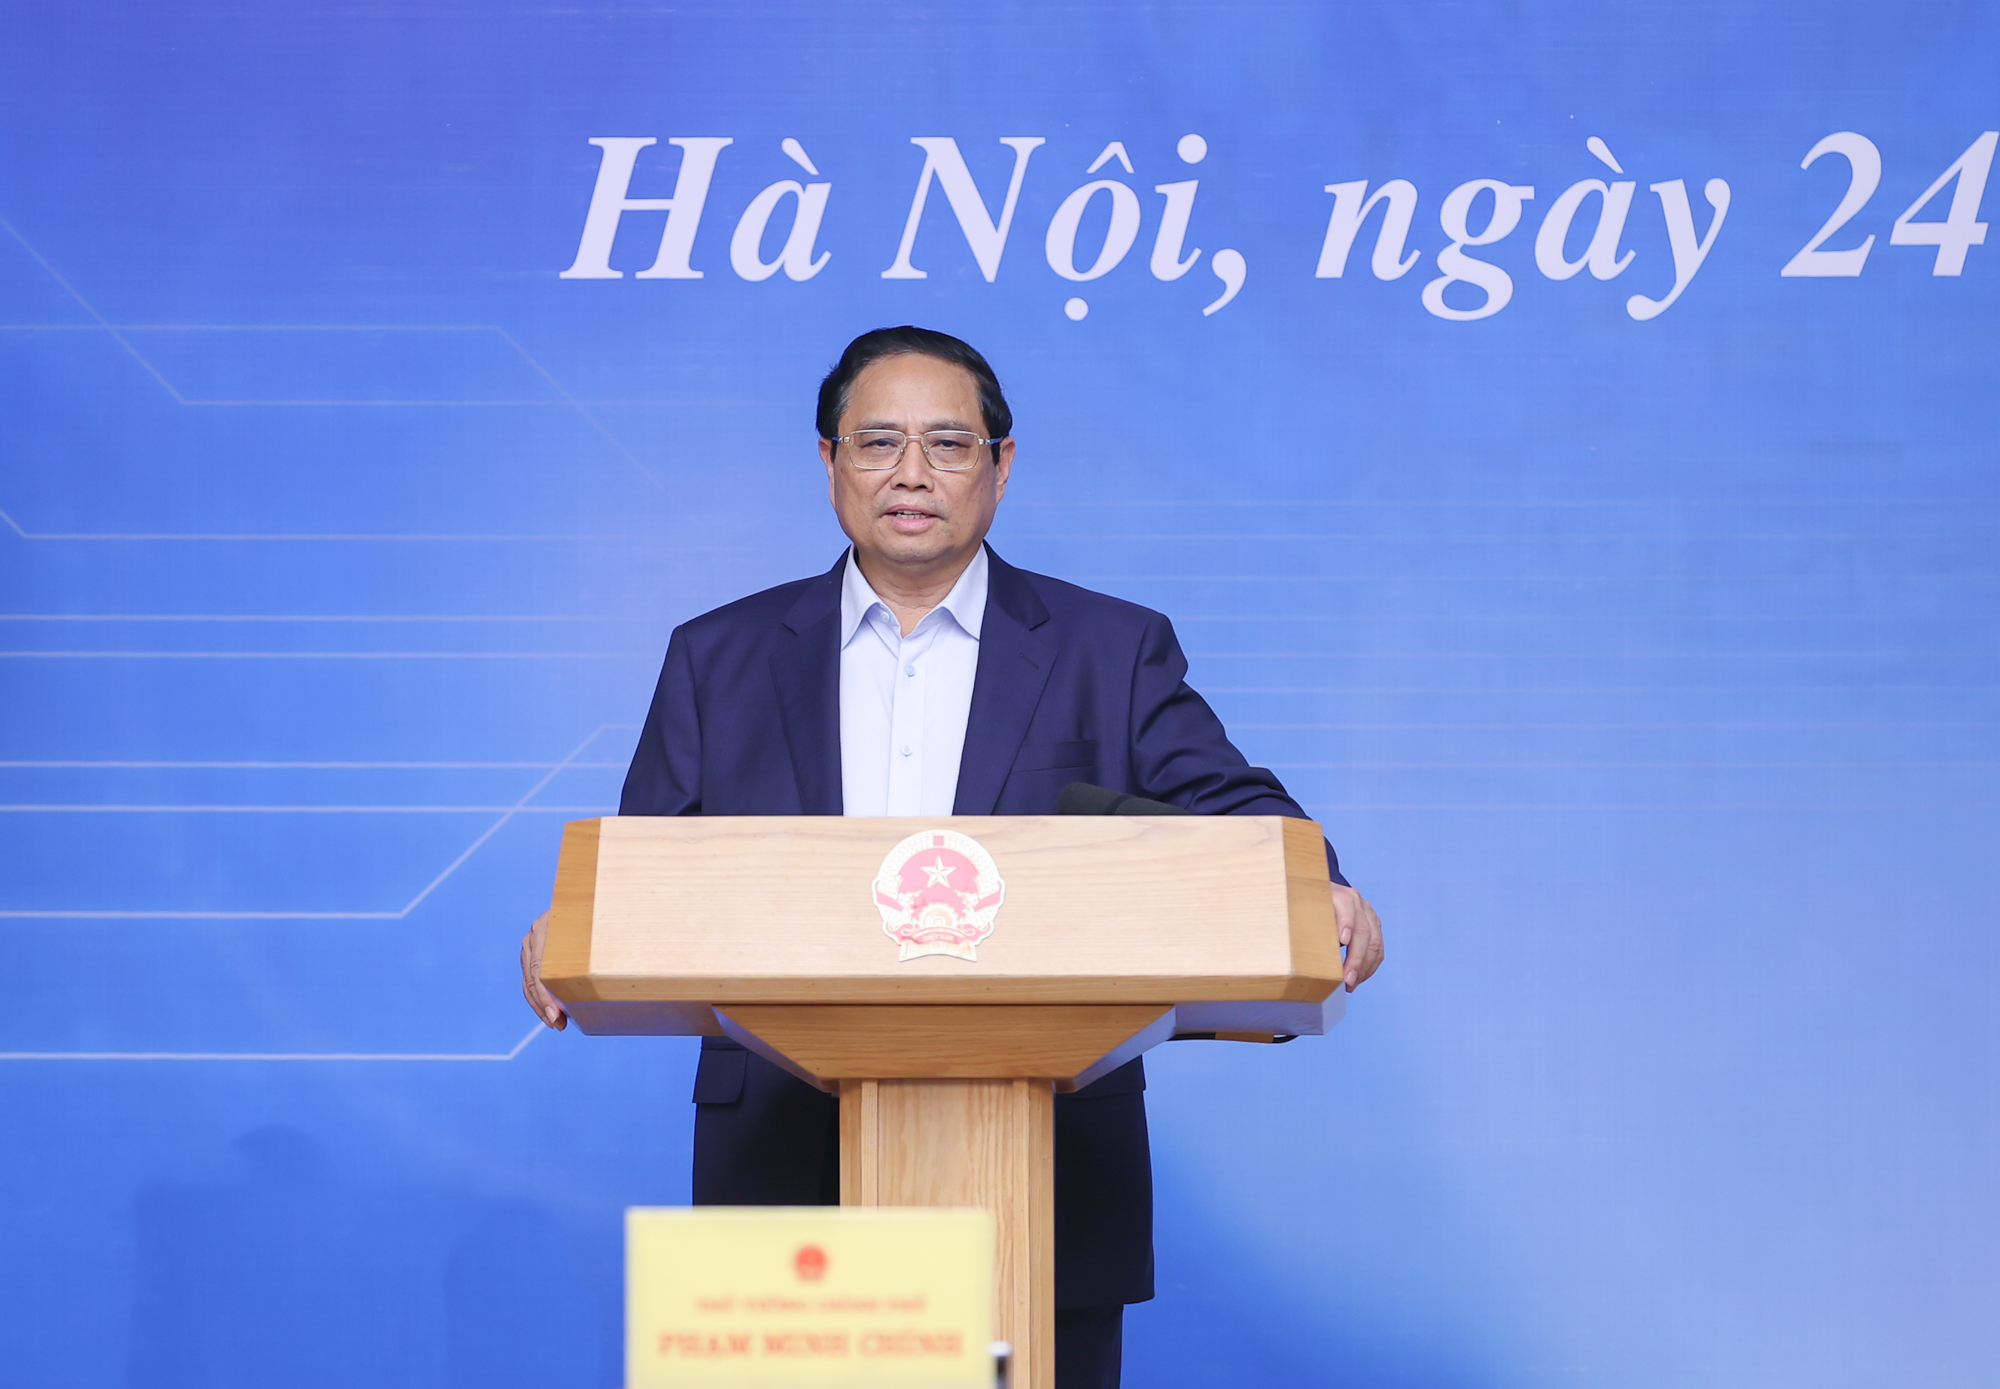 Thủ tướng Phạm Minh Chính nhấn mạnh, phát triển nguồn nhân lực cho công nghiệp bán dẫn là ""đột phá của đột phá" trong đào tạo nhân lực chất lượng cao - Ảnh: VGP/Nhật Bắc